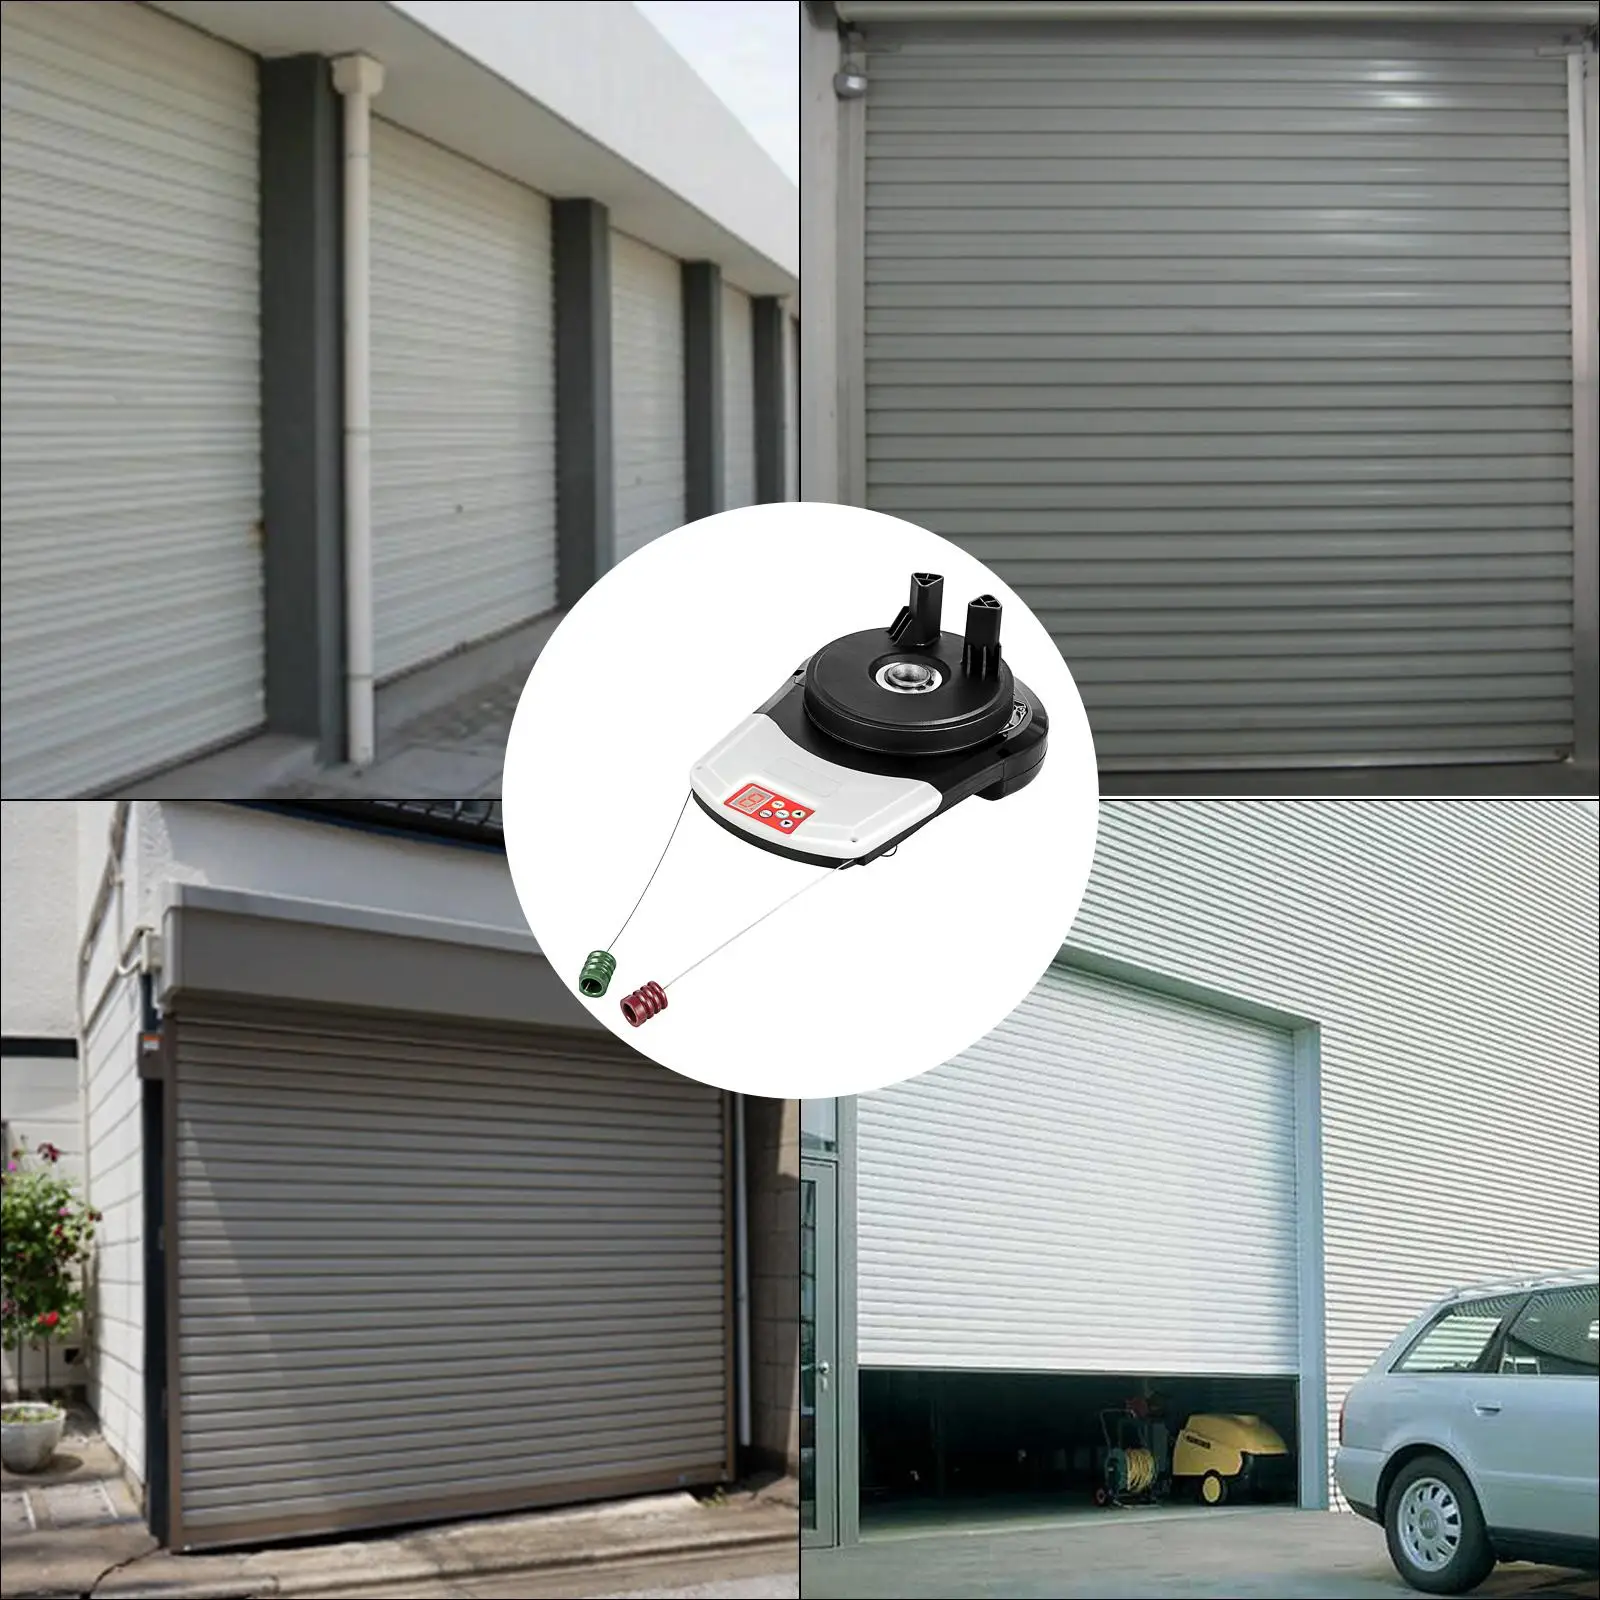 AGA: Un sistema más seguro para puertas de garaje